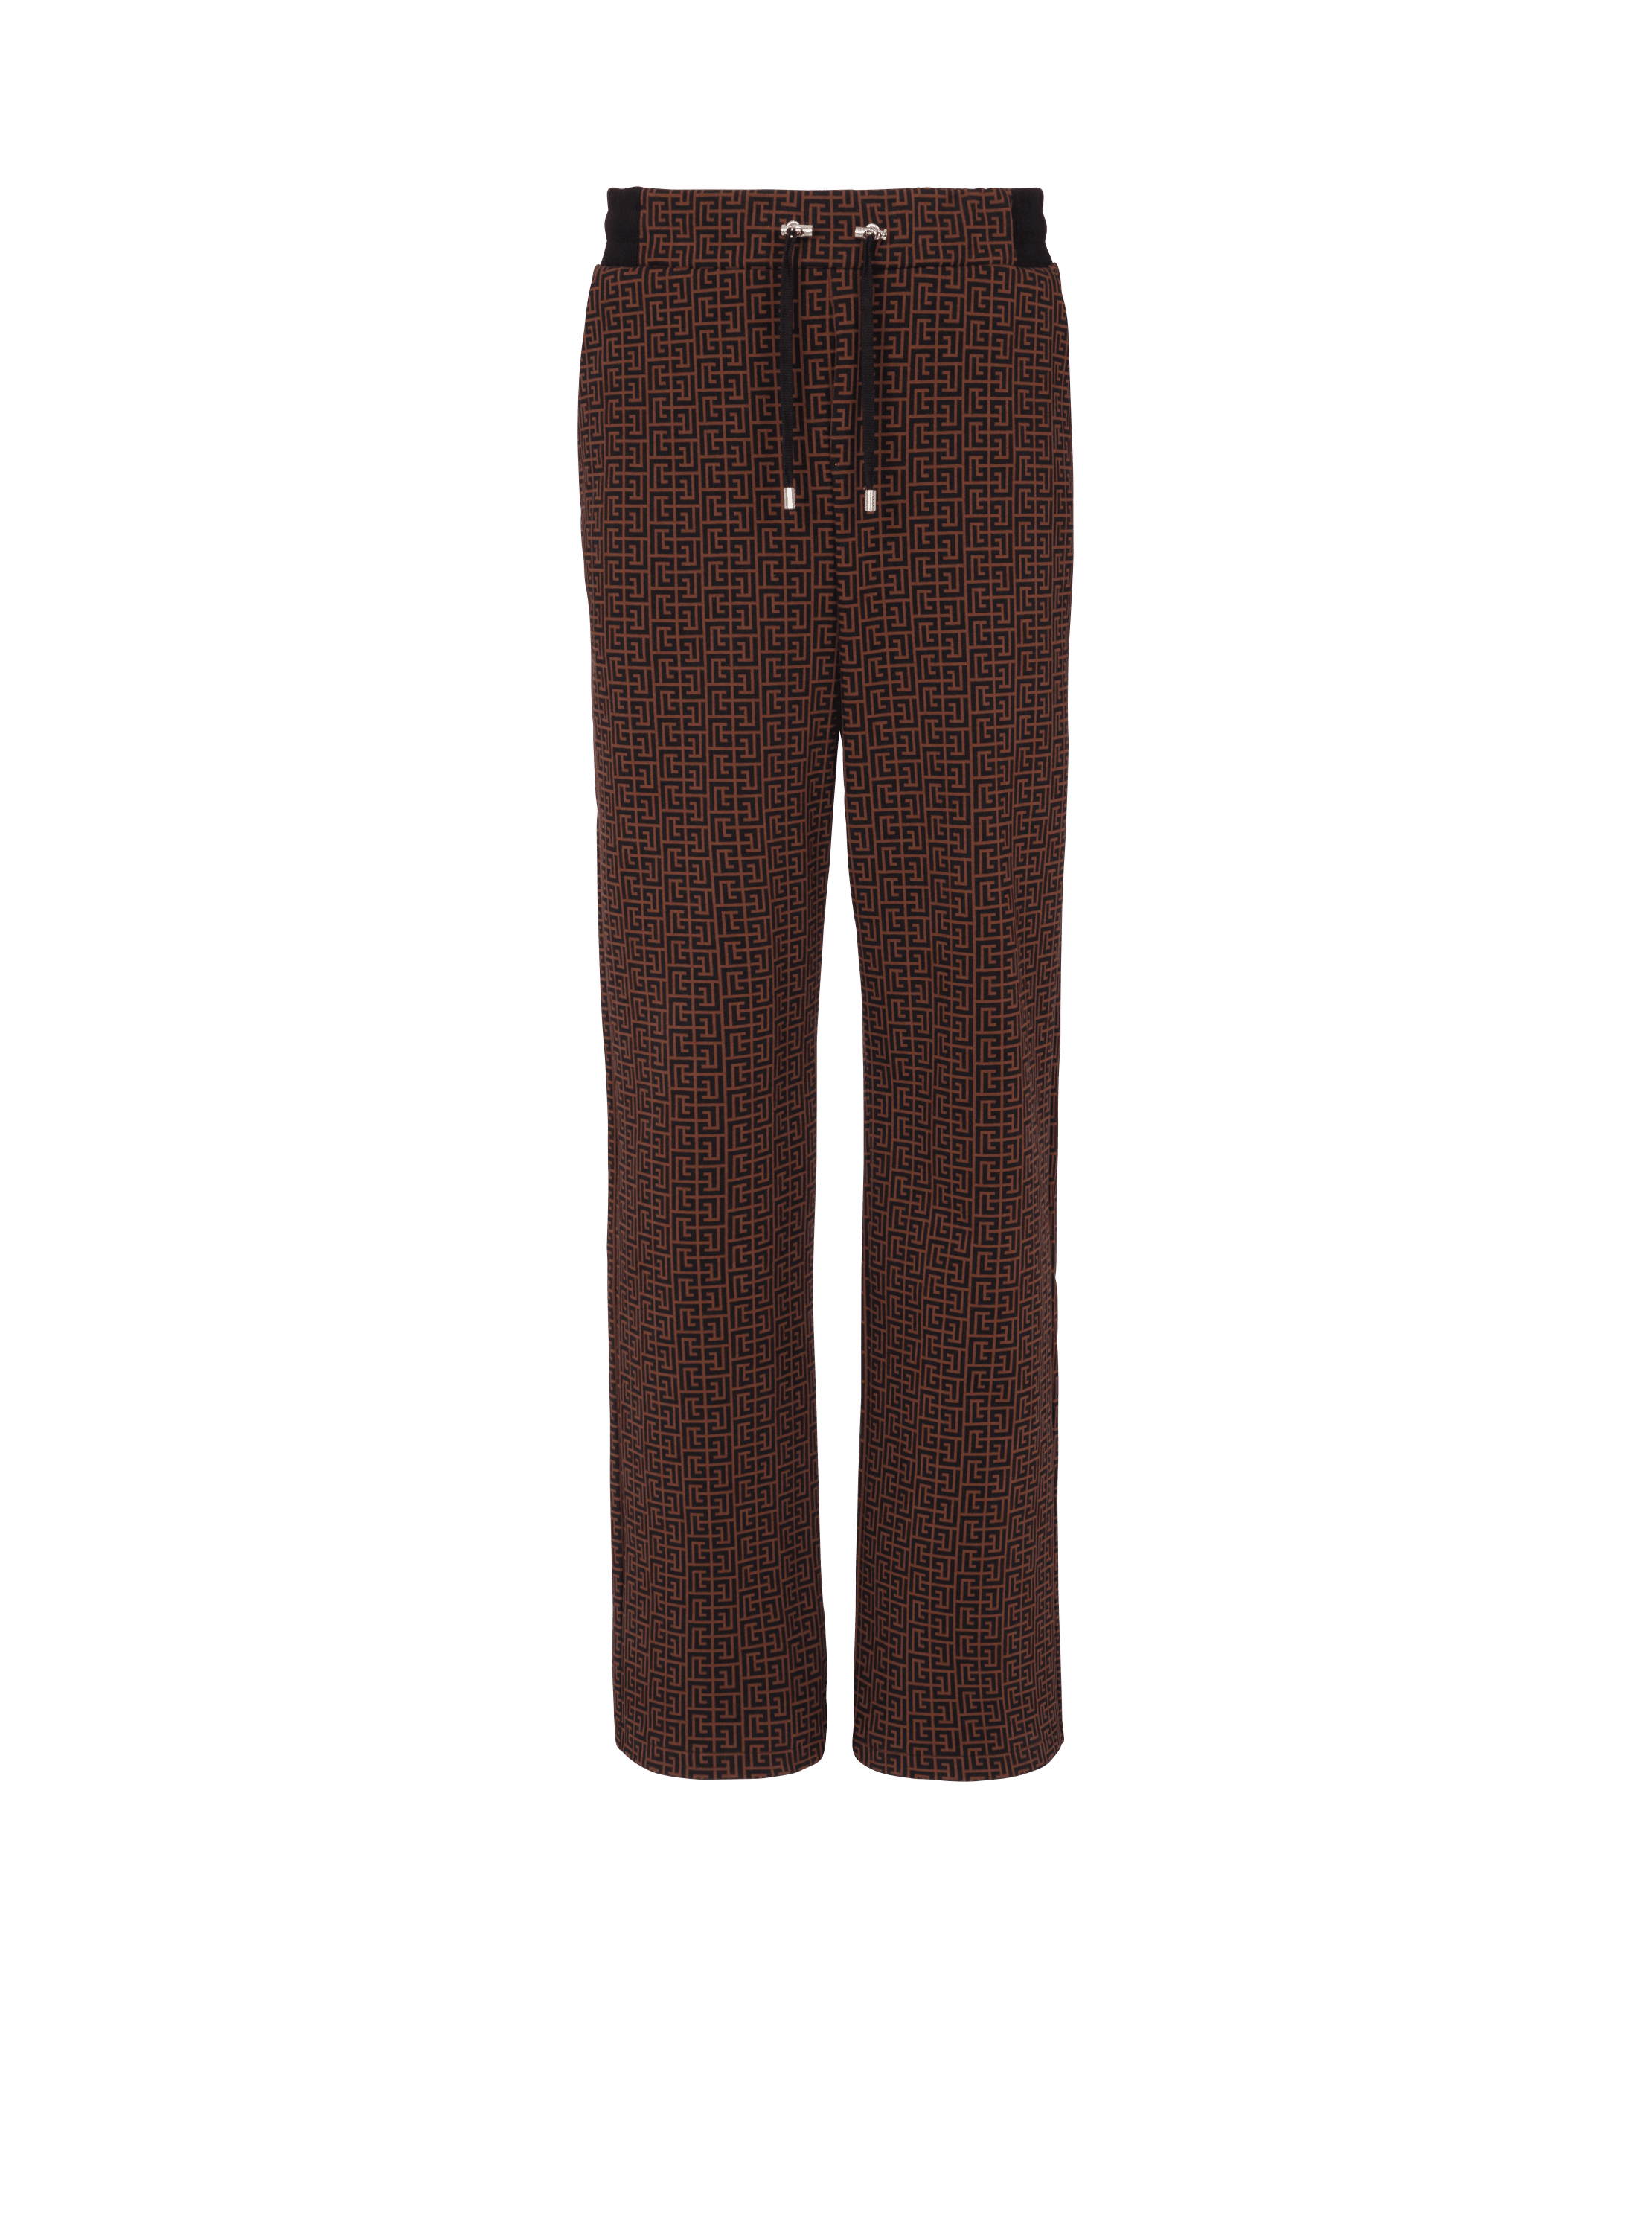 Pantalón efecto pijama con monograma, marrón, hi-res